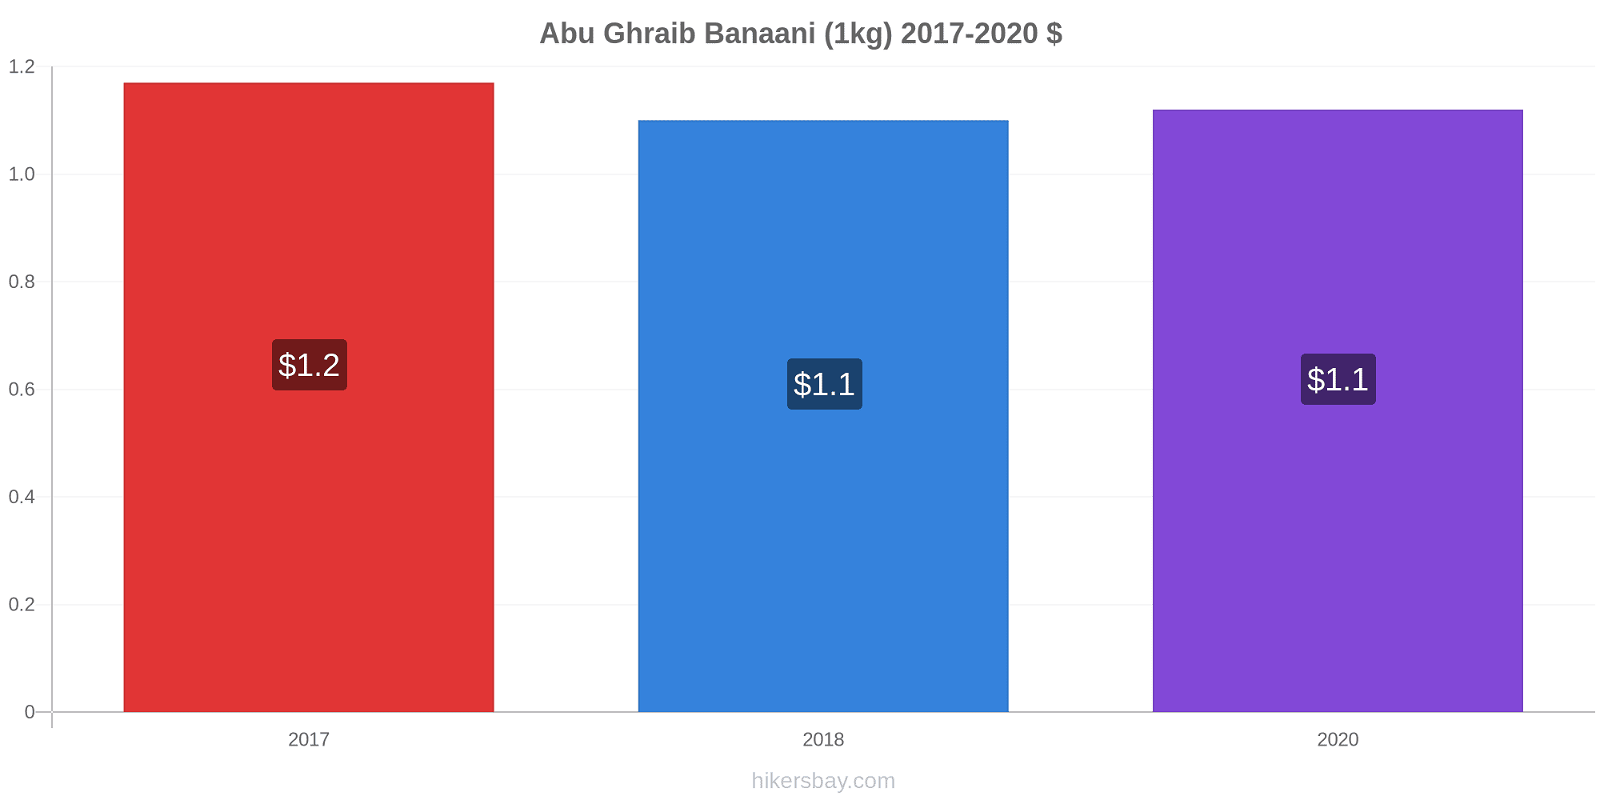 Abu Ghraib hintojen muutokset Banaani (1kg) hikersbay.com